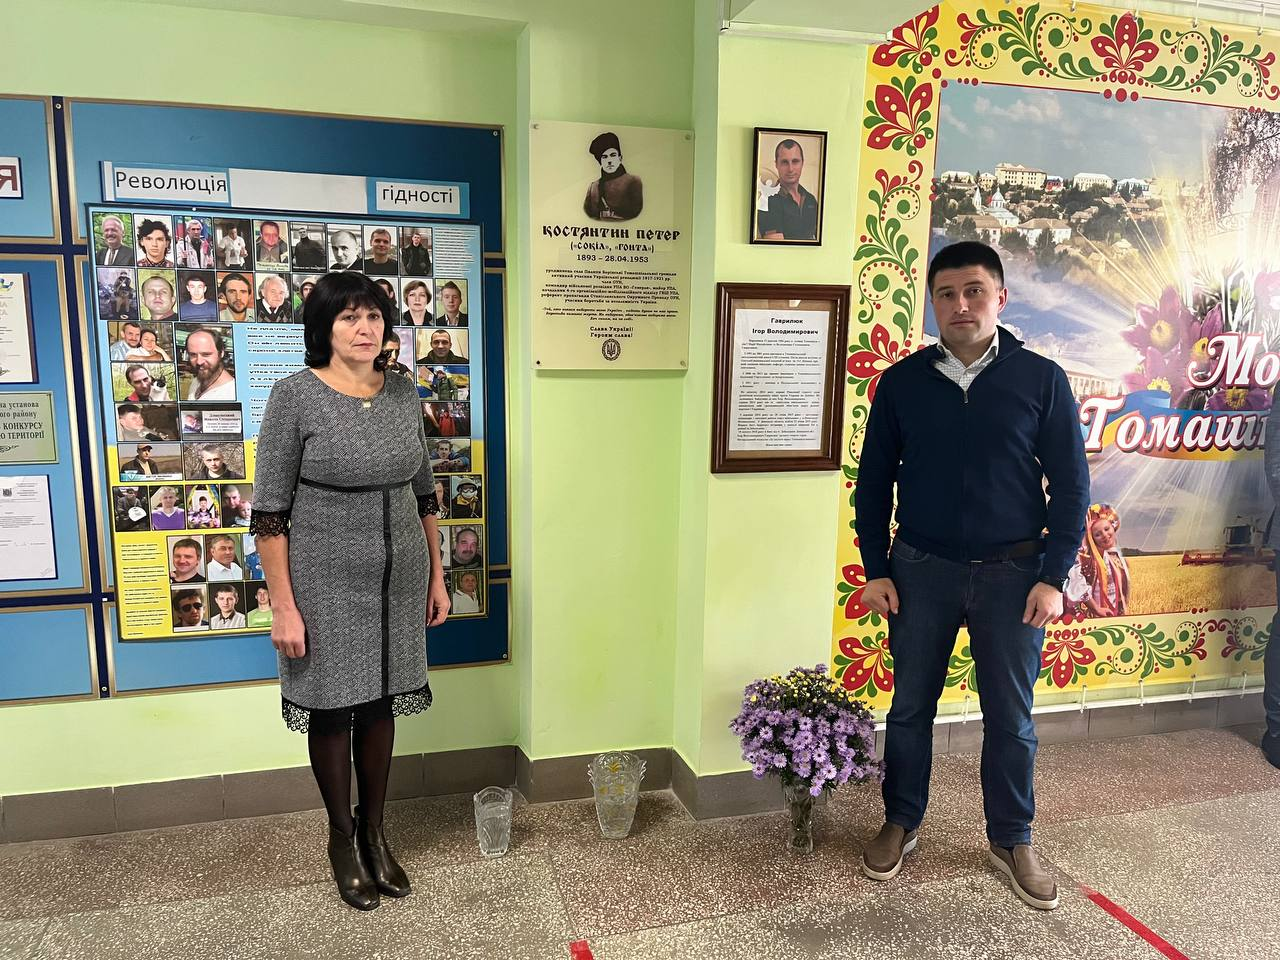 На Томашпільщині відкрили пам'ятну дошку майору УПА Костянтину Петеру